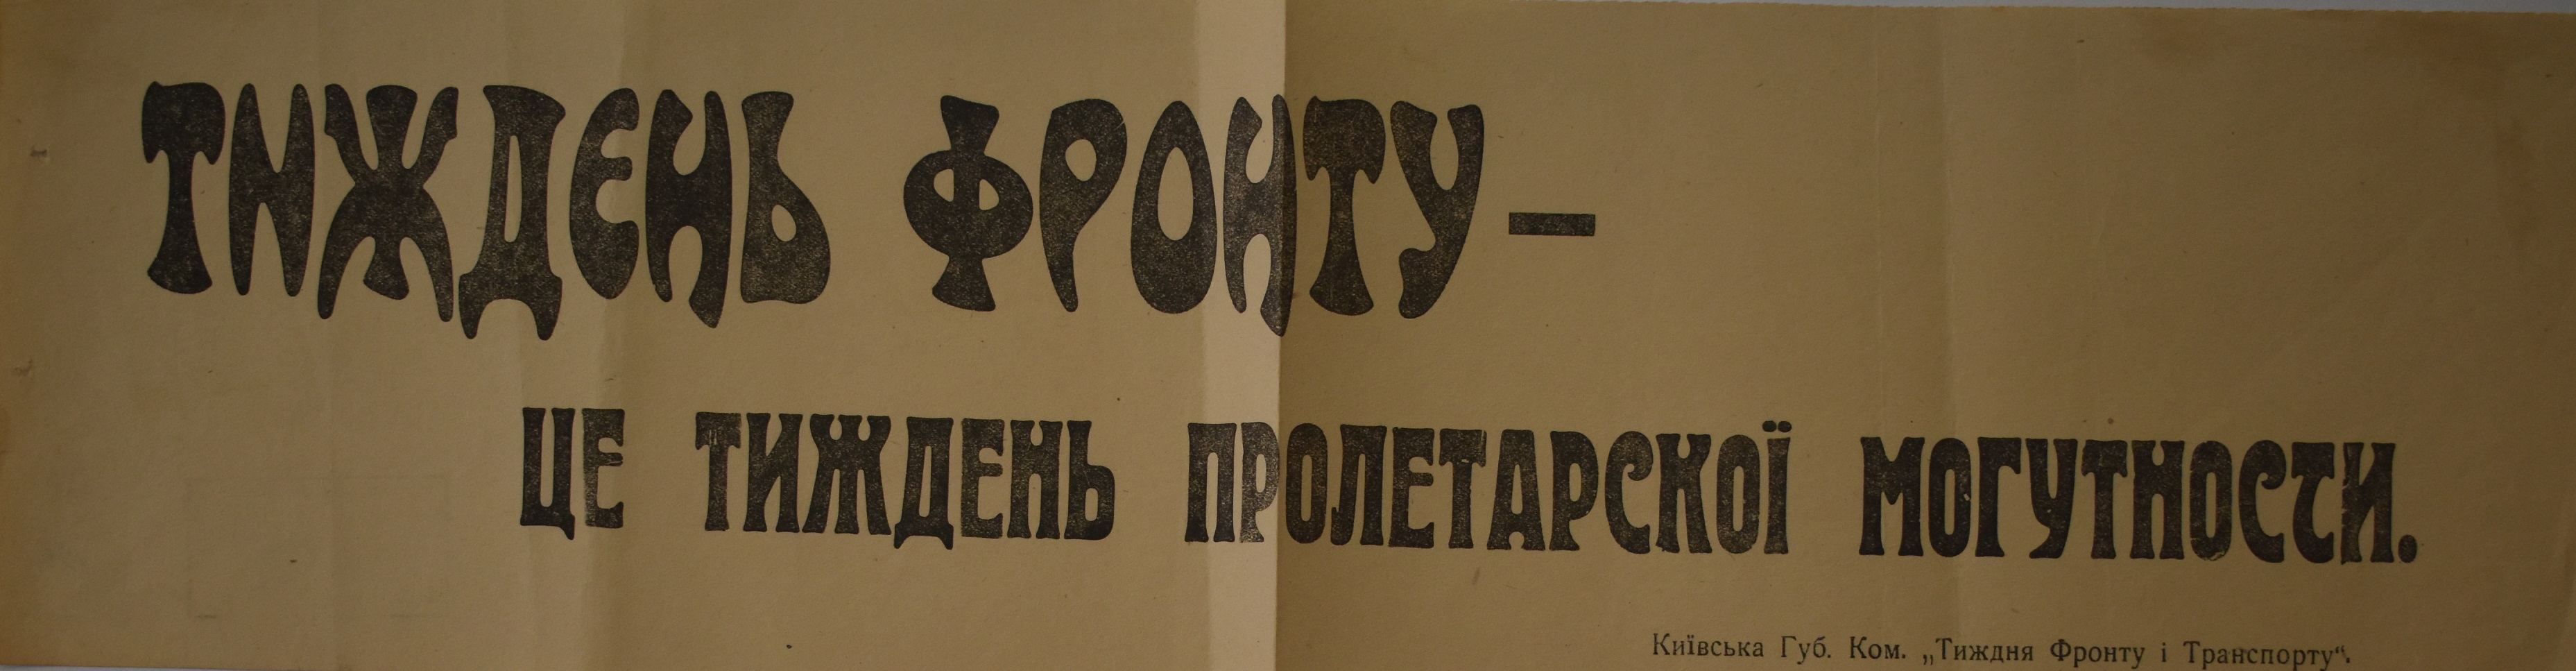 Листівка "Тиждень фронту - тиждень пролетарської могутності"